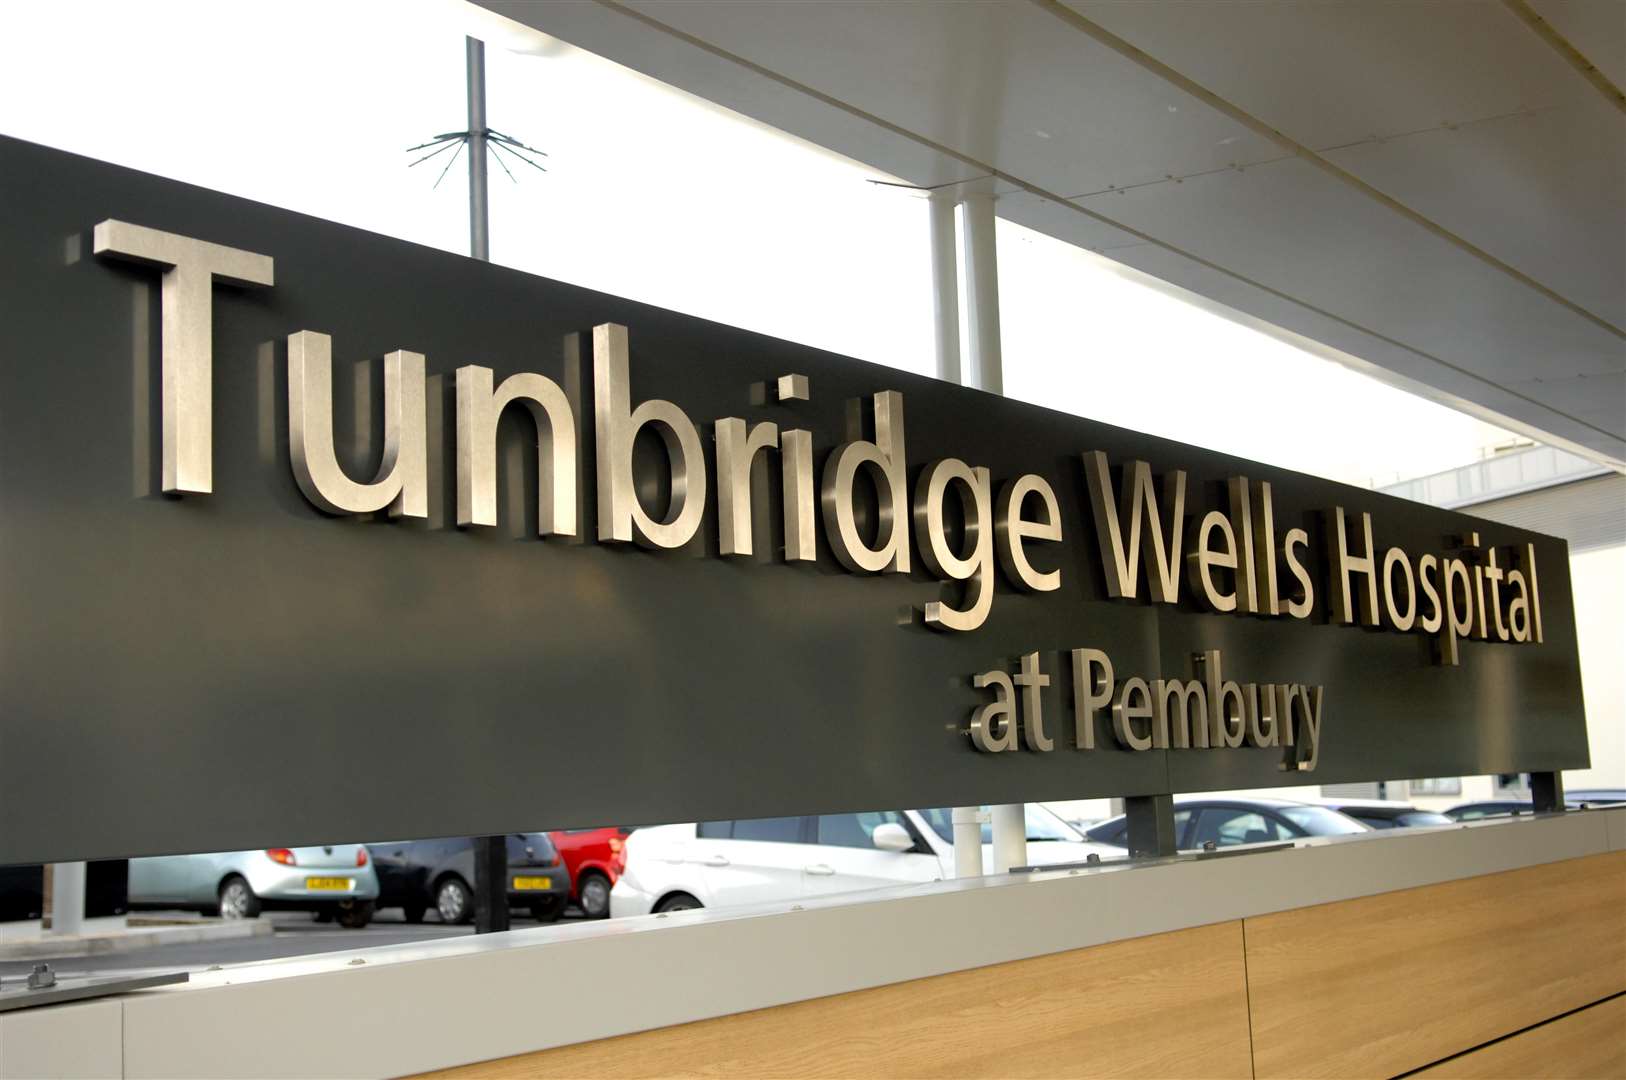 The Tunbridge Wells Hospital at Pembury